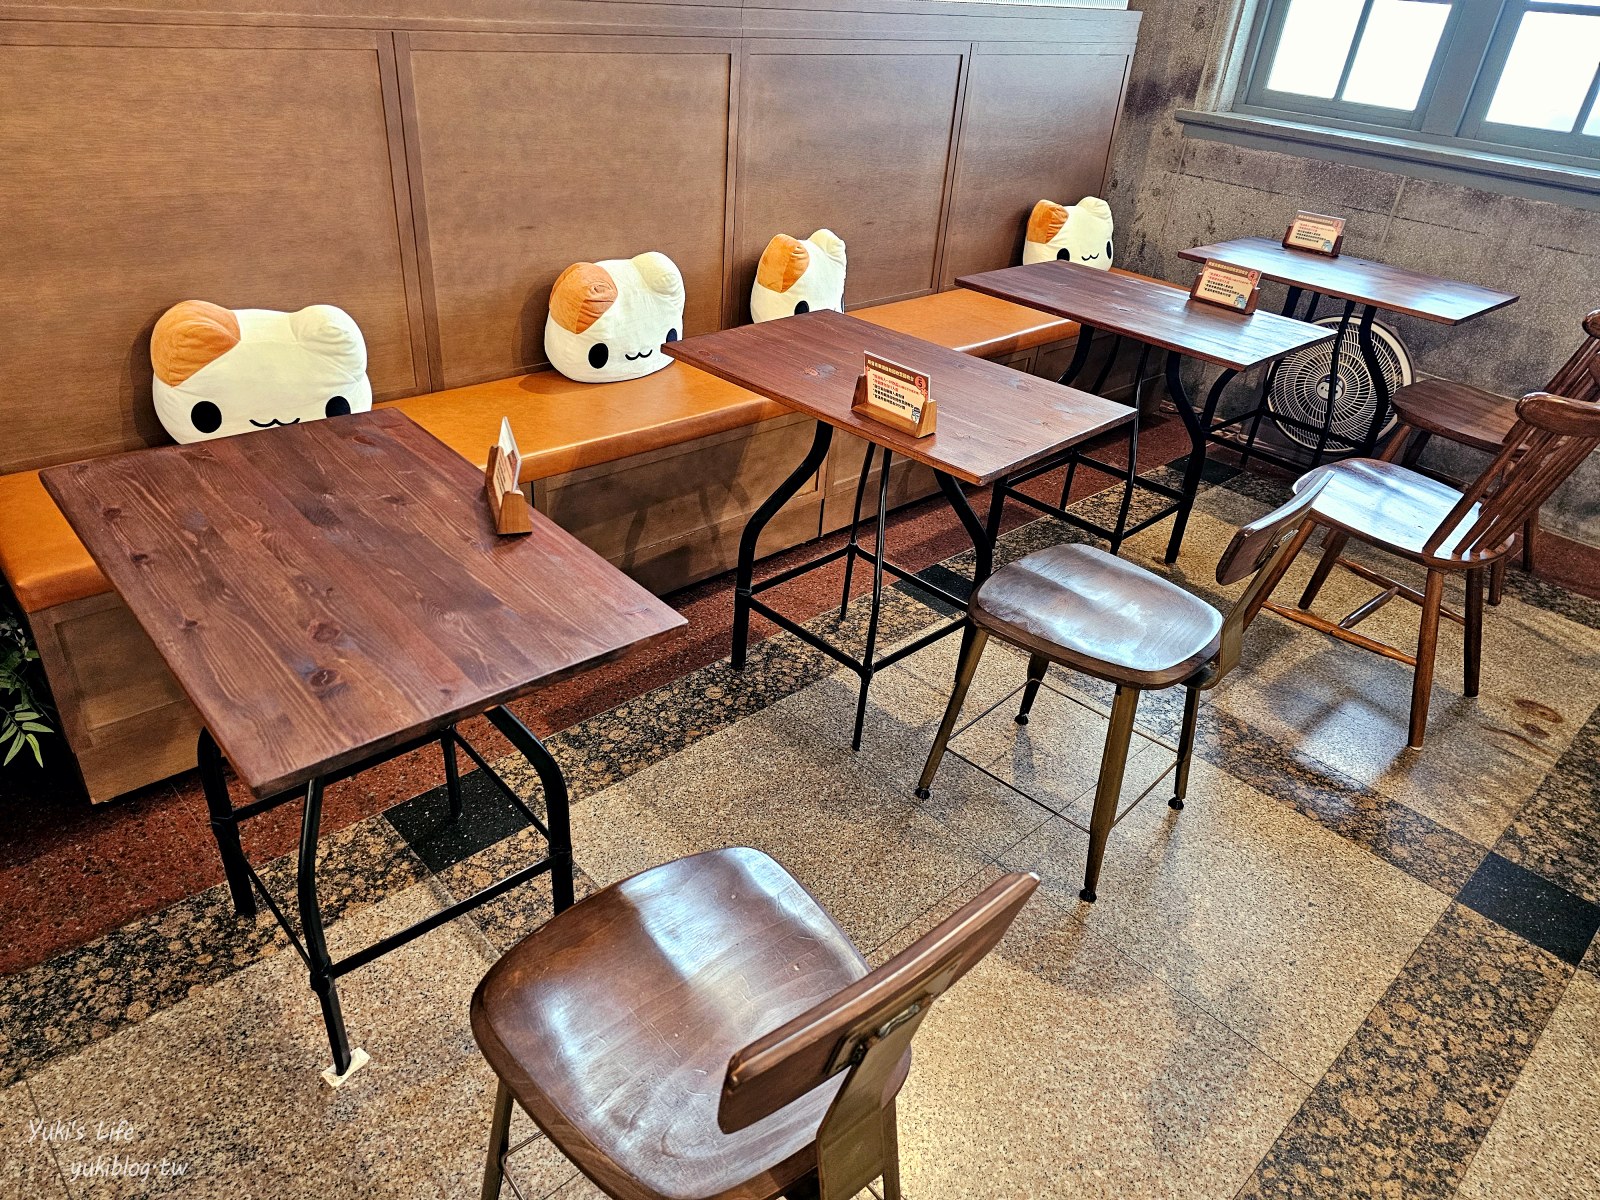 台中咖啡廳|奶泡貓咖啡Foamcat Cafe(臺中驛店)|古蹟裡的奶泡貓雞蛋糕太有梗，可愛爆擊~ - yukiblog.tw